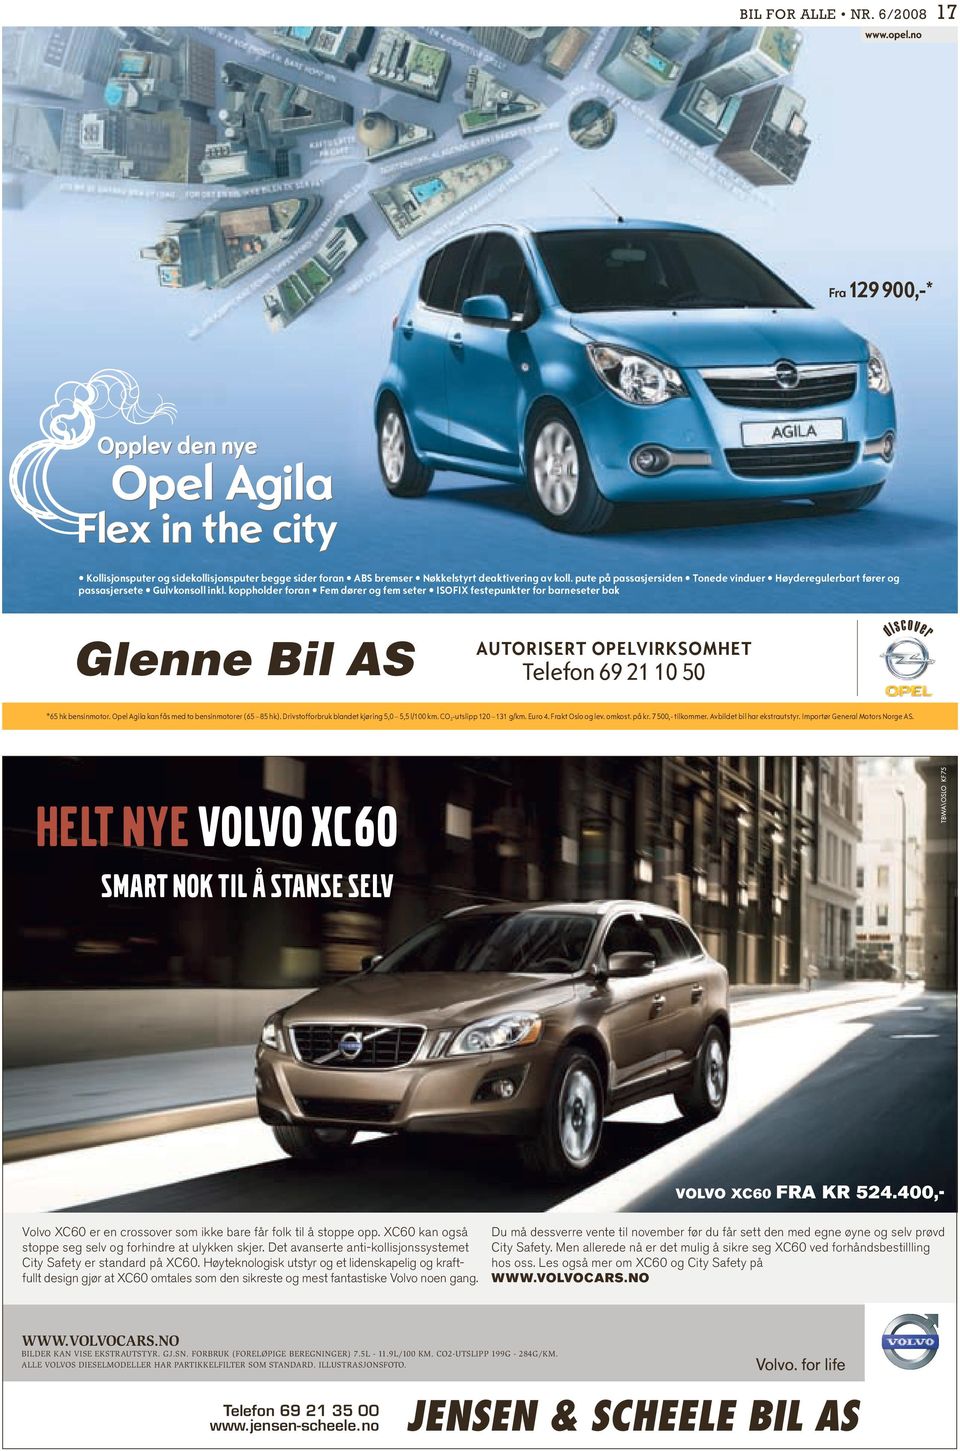 La et autorisert Opel-verksted bruker kun originaldeler. Velkommen. ta hånd om bilen din. Vi har kunnskapen og bruker kun originaldeler. Velkommen. KLIPP UT ANNONSEN!